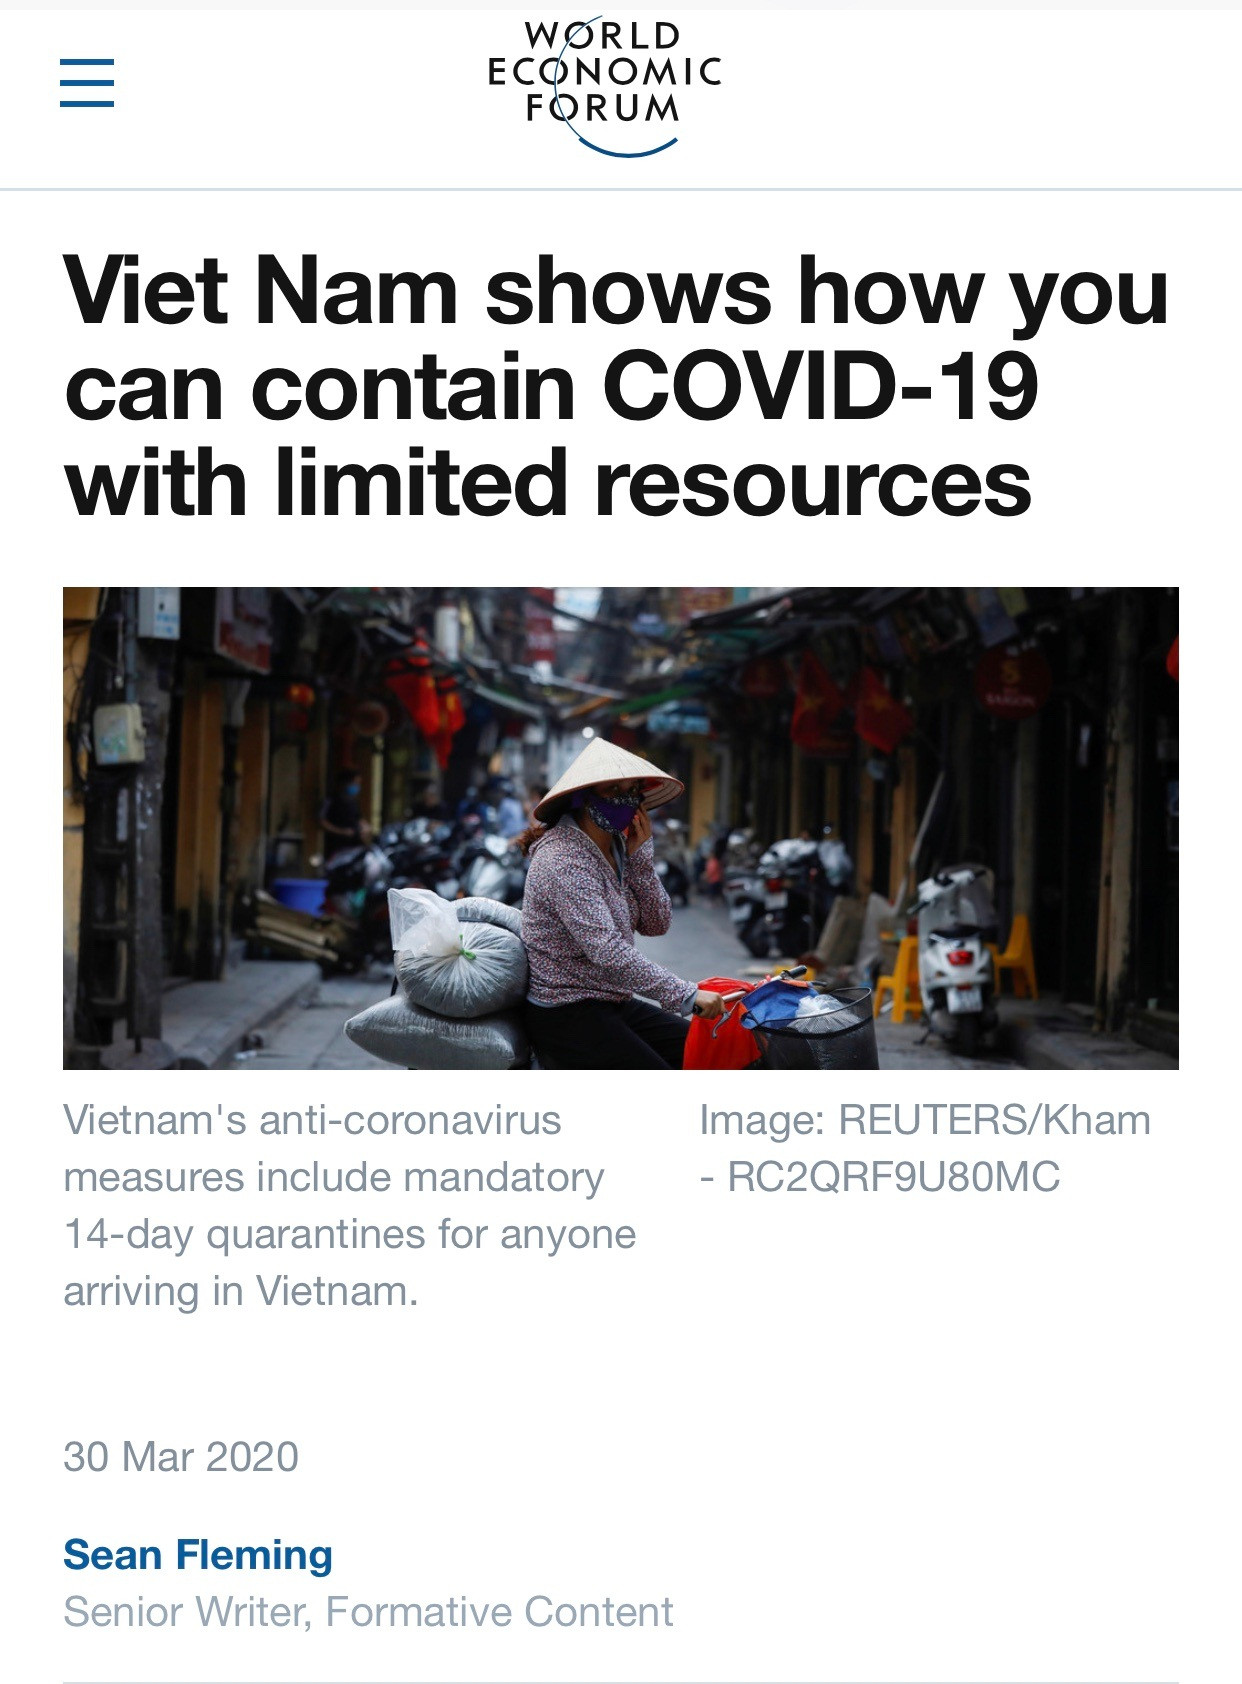 Truyền thông quốc tế đánh giá cao Việt Nam trong công tác phòng, chống dịch Covid-19 - Ảnh 2.